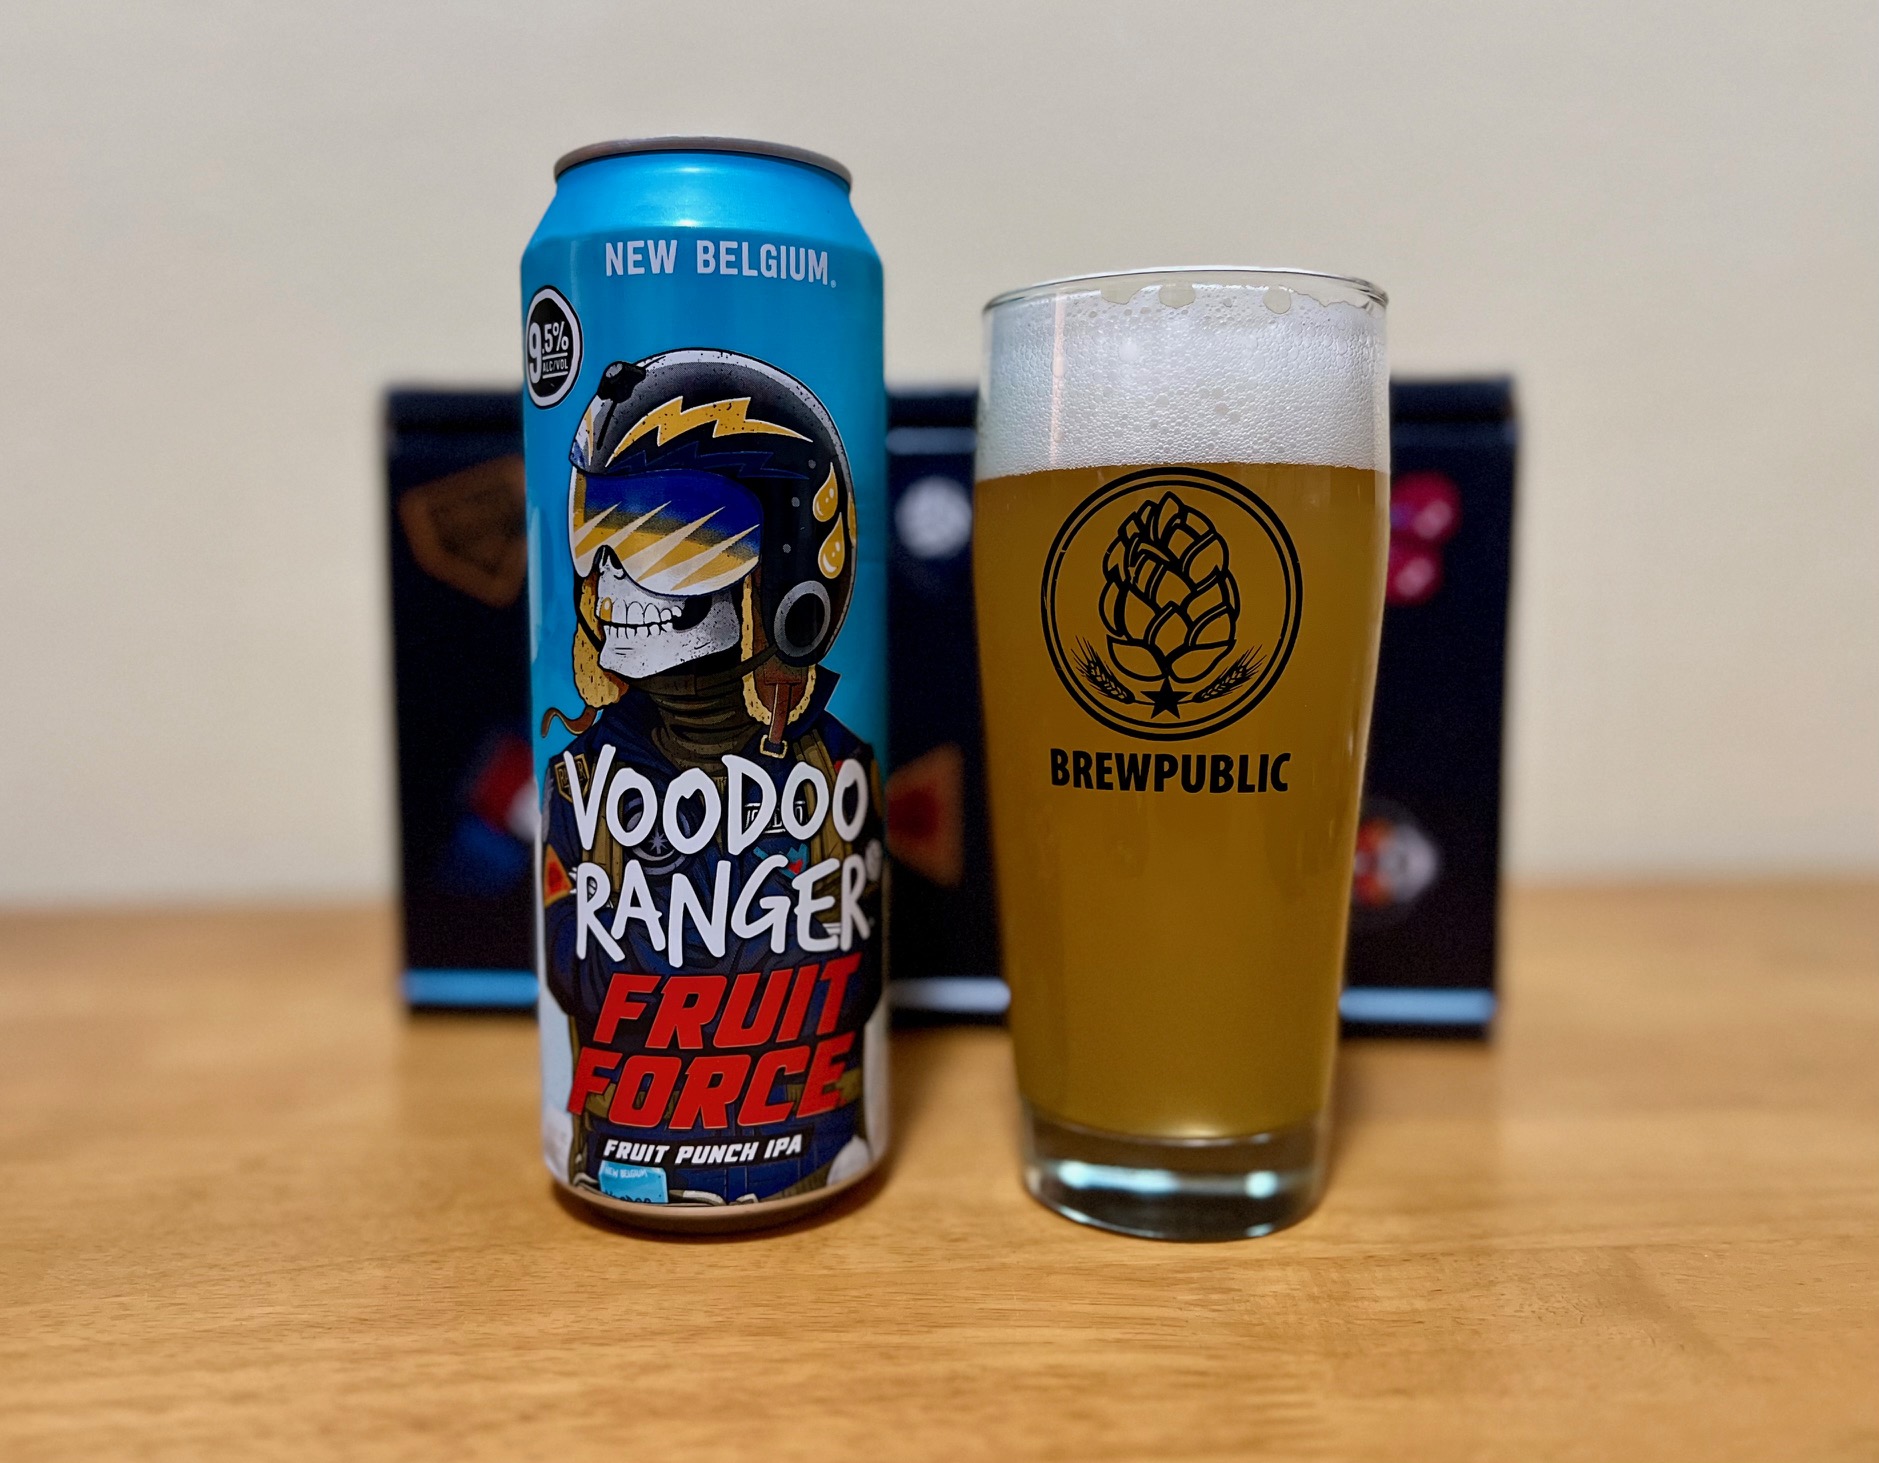 Sampling New Belgium Brewing's new Voodoo Ranger Fruit Force IPA